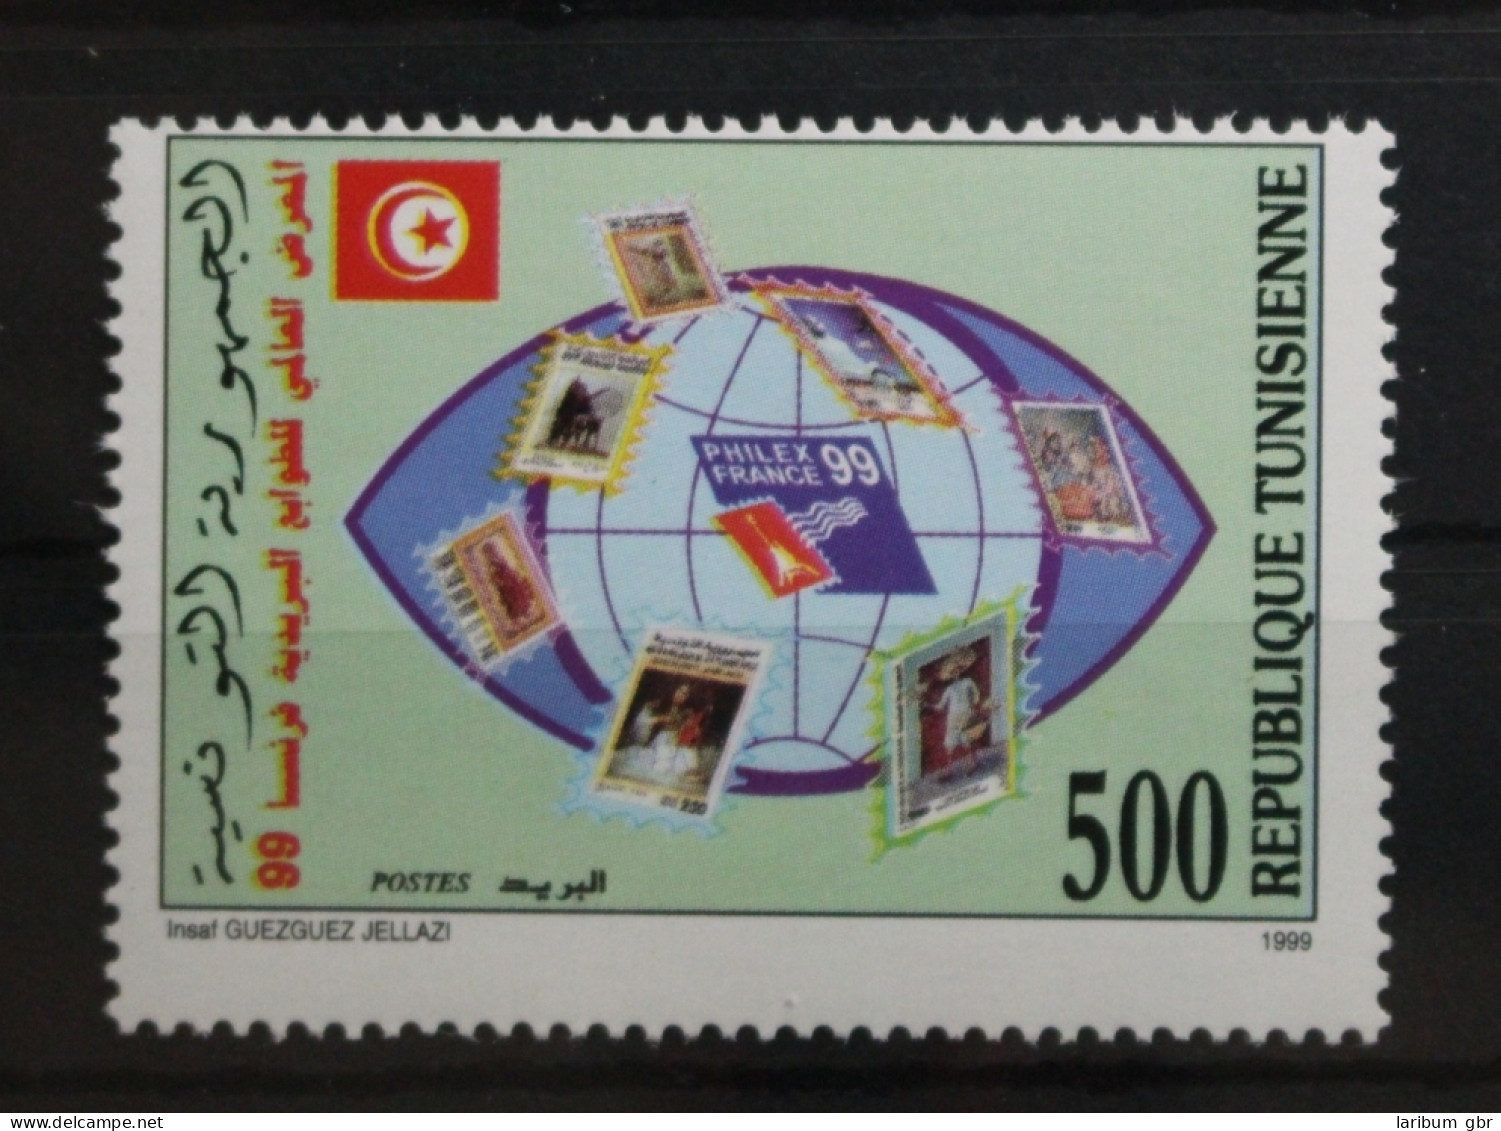 Tunesien 1433 Postfrisch #TC168 - Tunisie (1956-...)